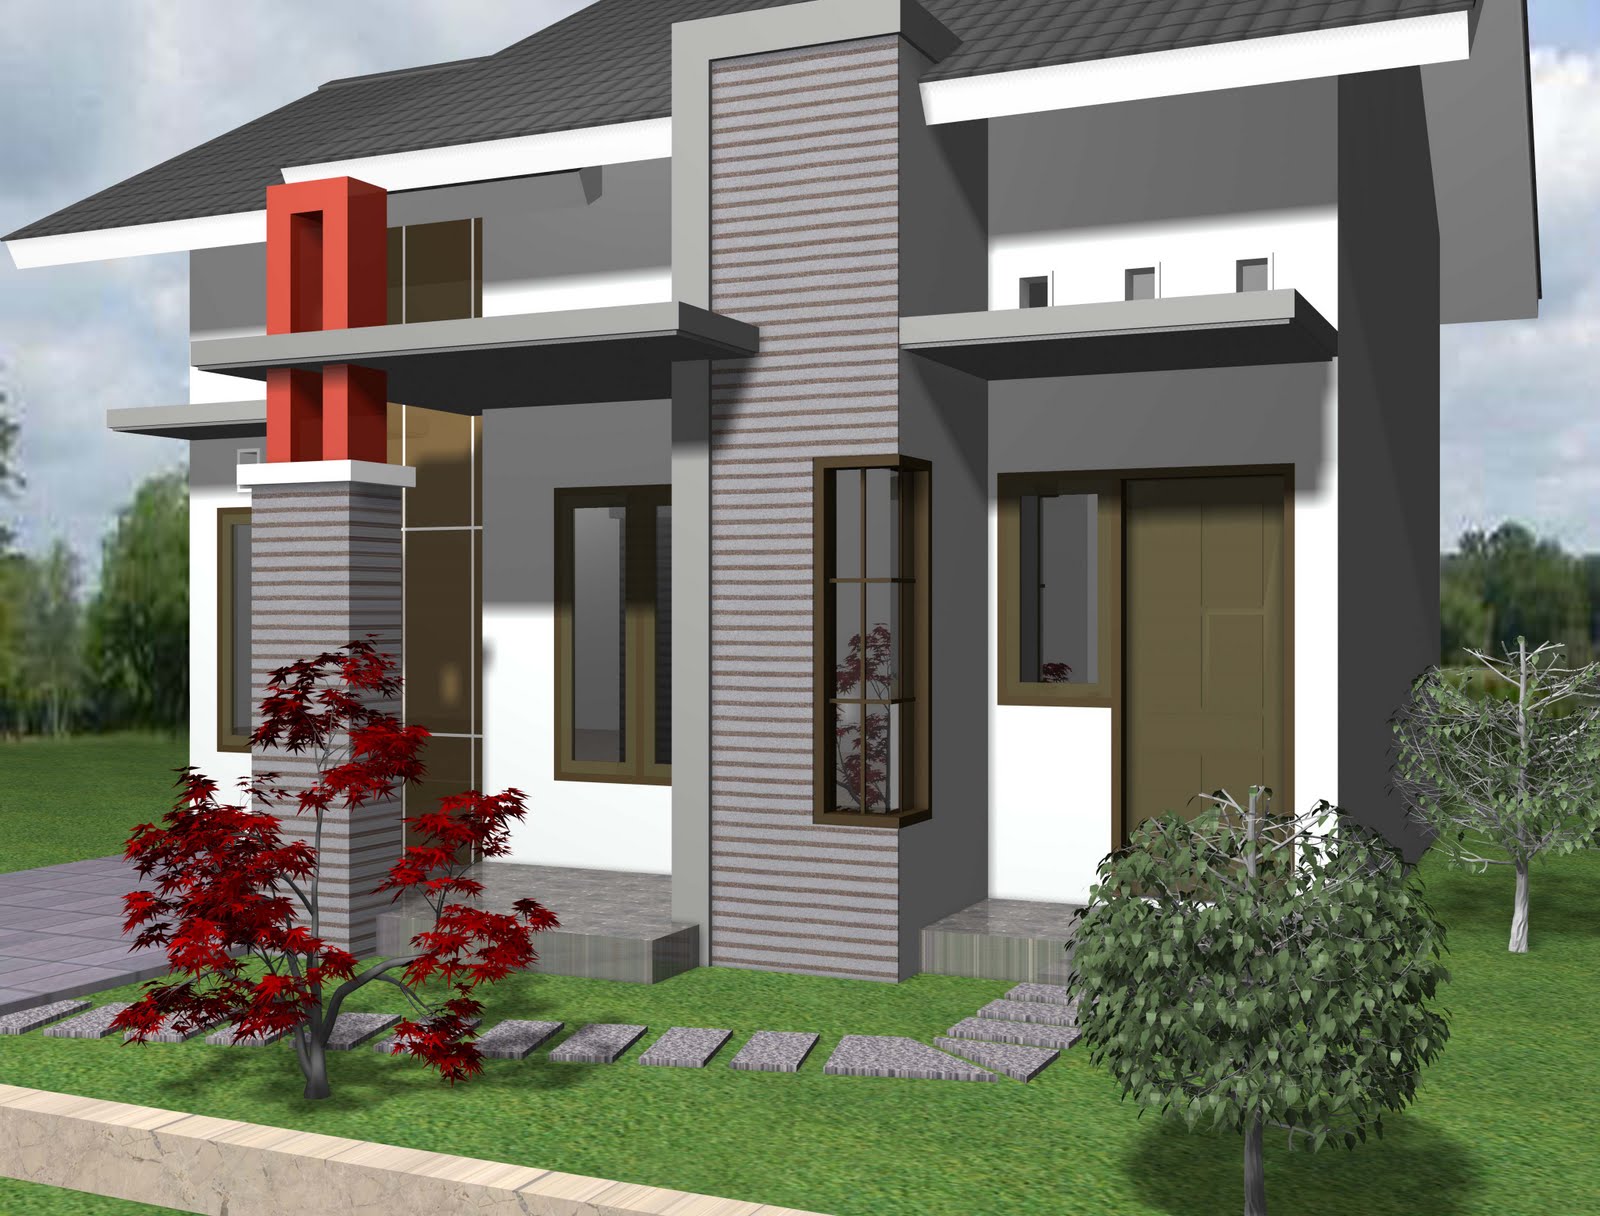 Desain Rumah Minimalis Type 21 Terbaru 2014